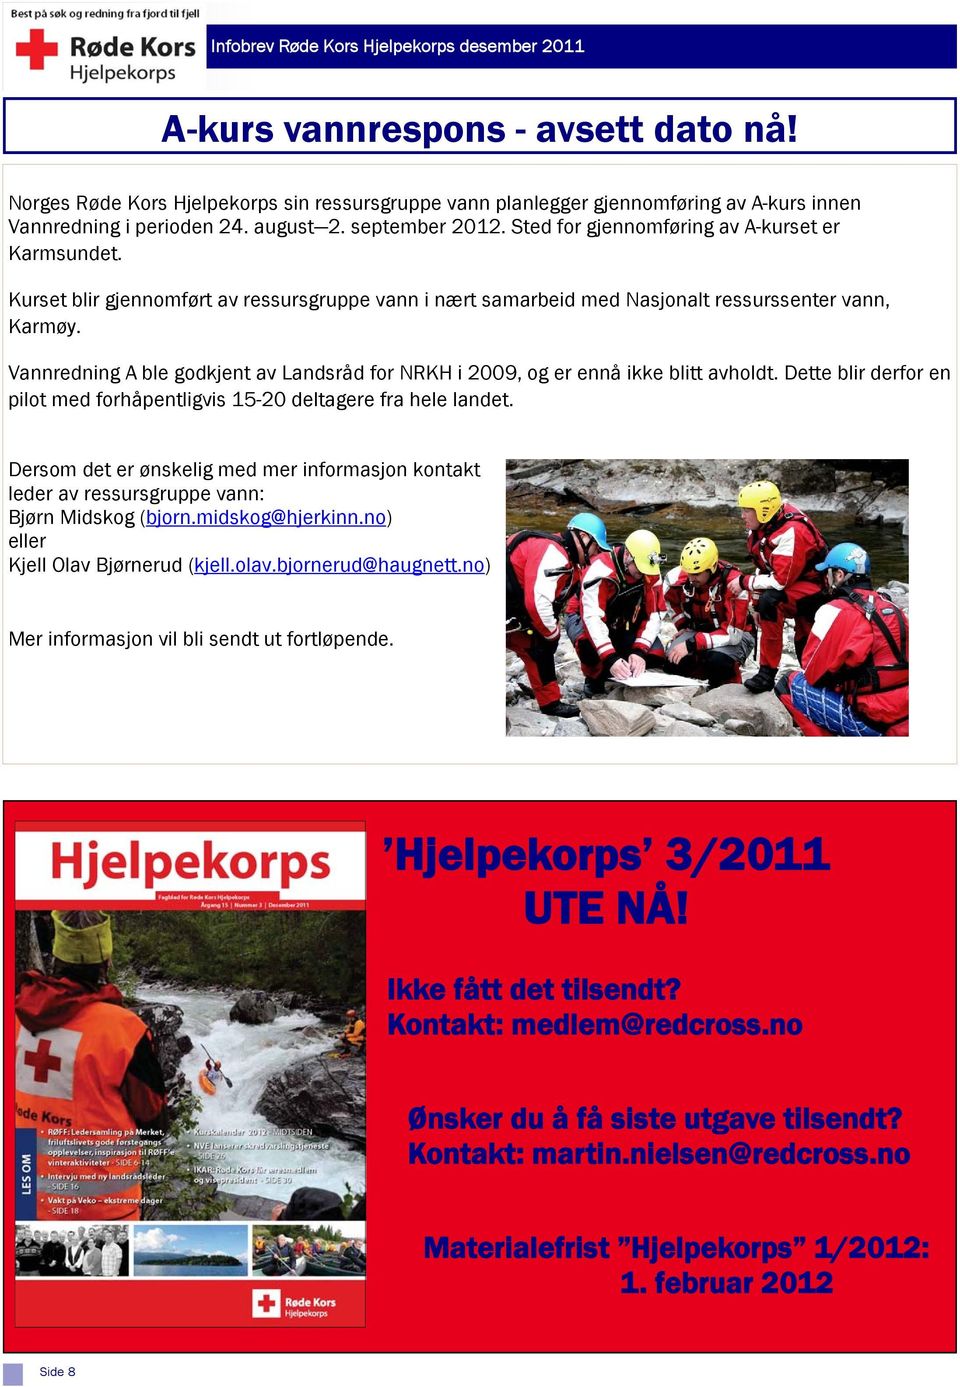 Vannredning A ble godkjent av Landsråd for NRKH i 2009, og er ennå ikke blitt avholdt. Dette blir derfor en pilot med forhåpentligvis 15-20 deltagere fra hele landet.